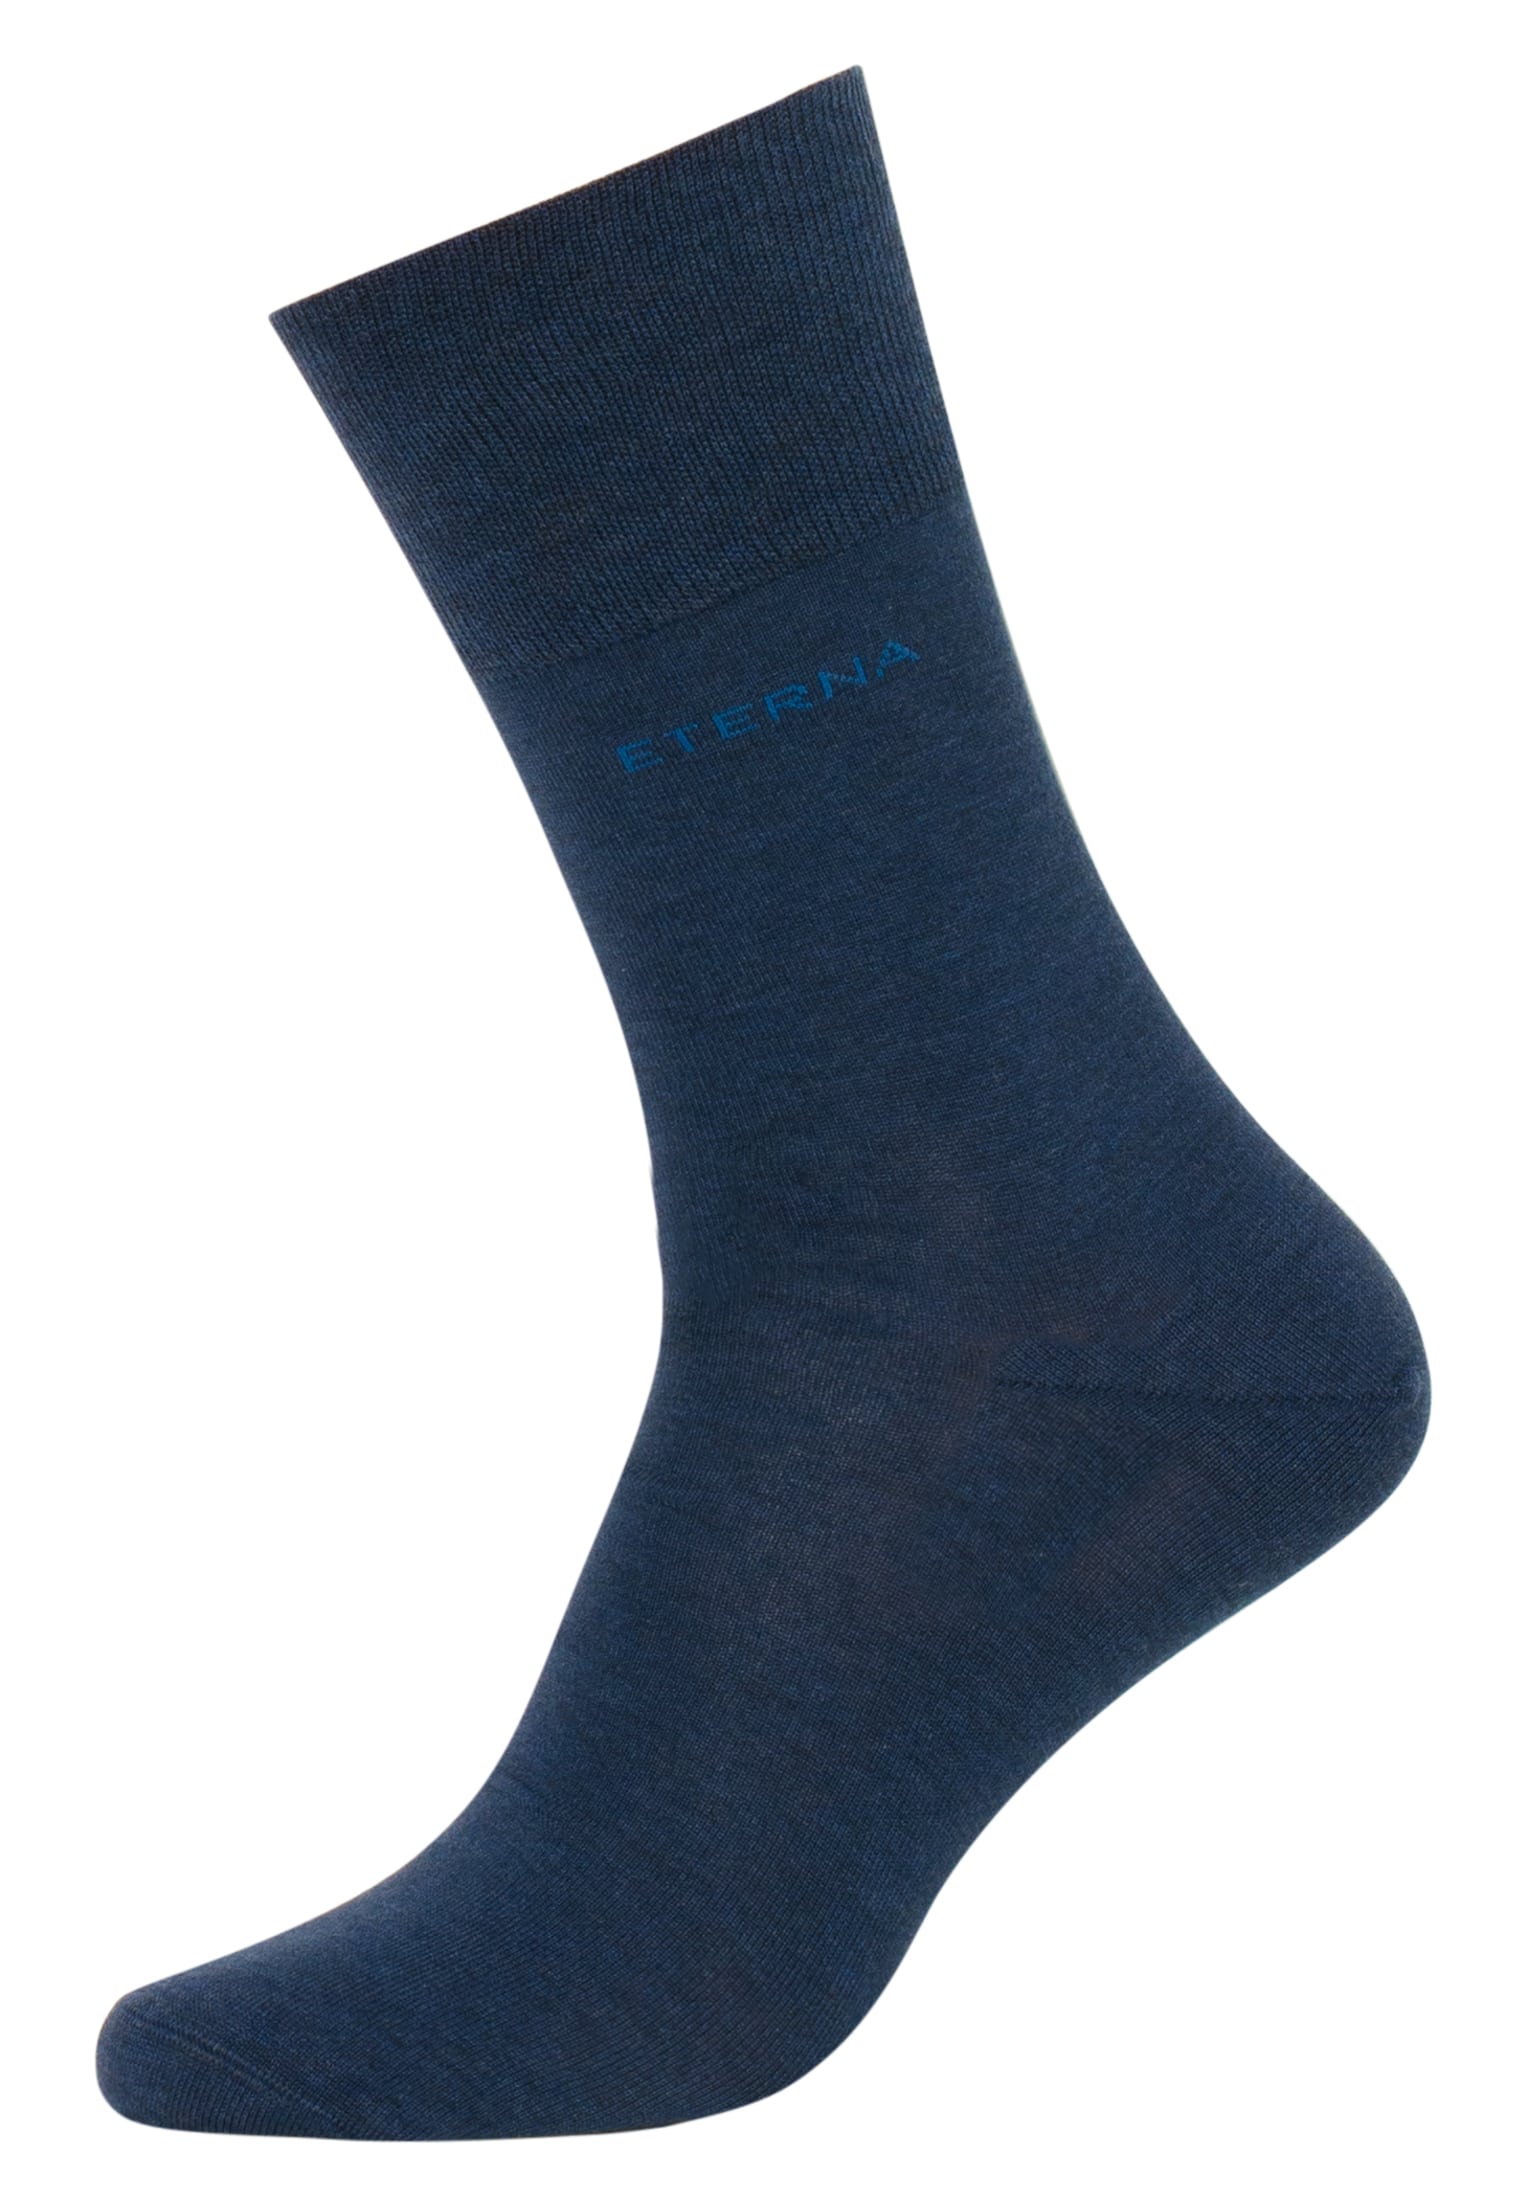 Socks in blue plain